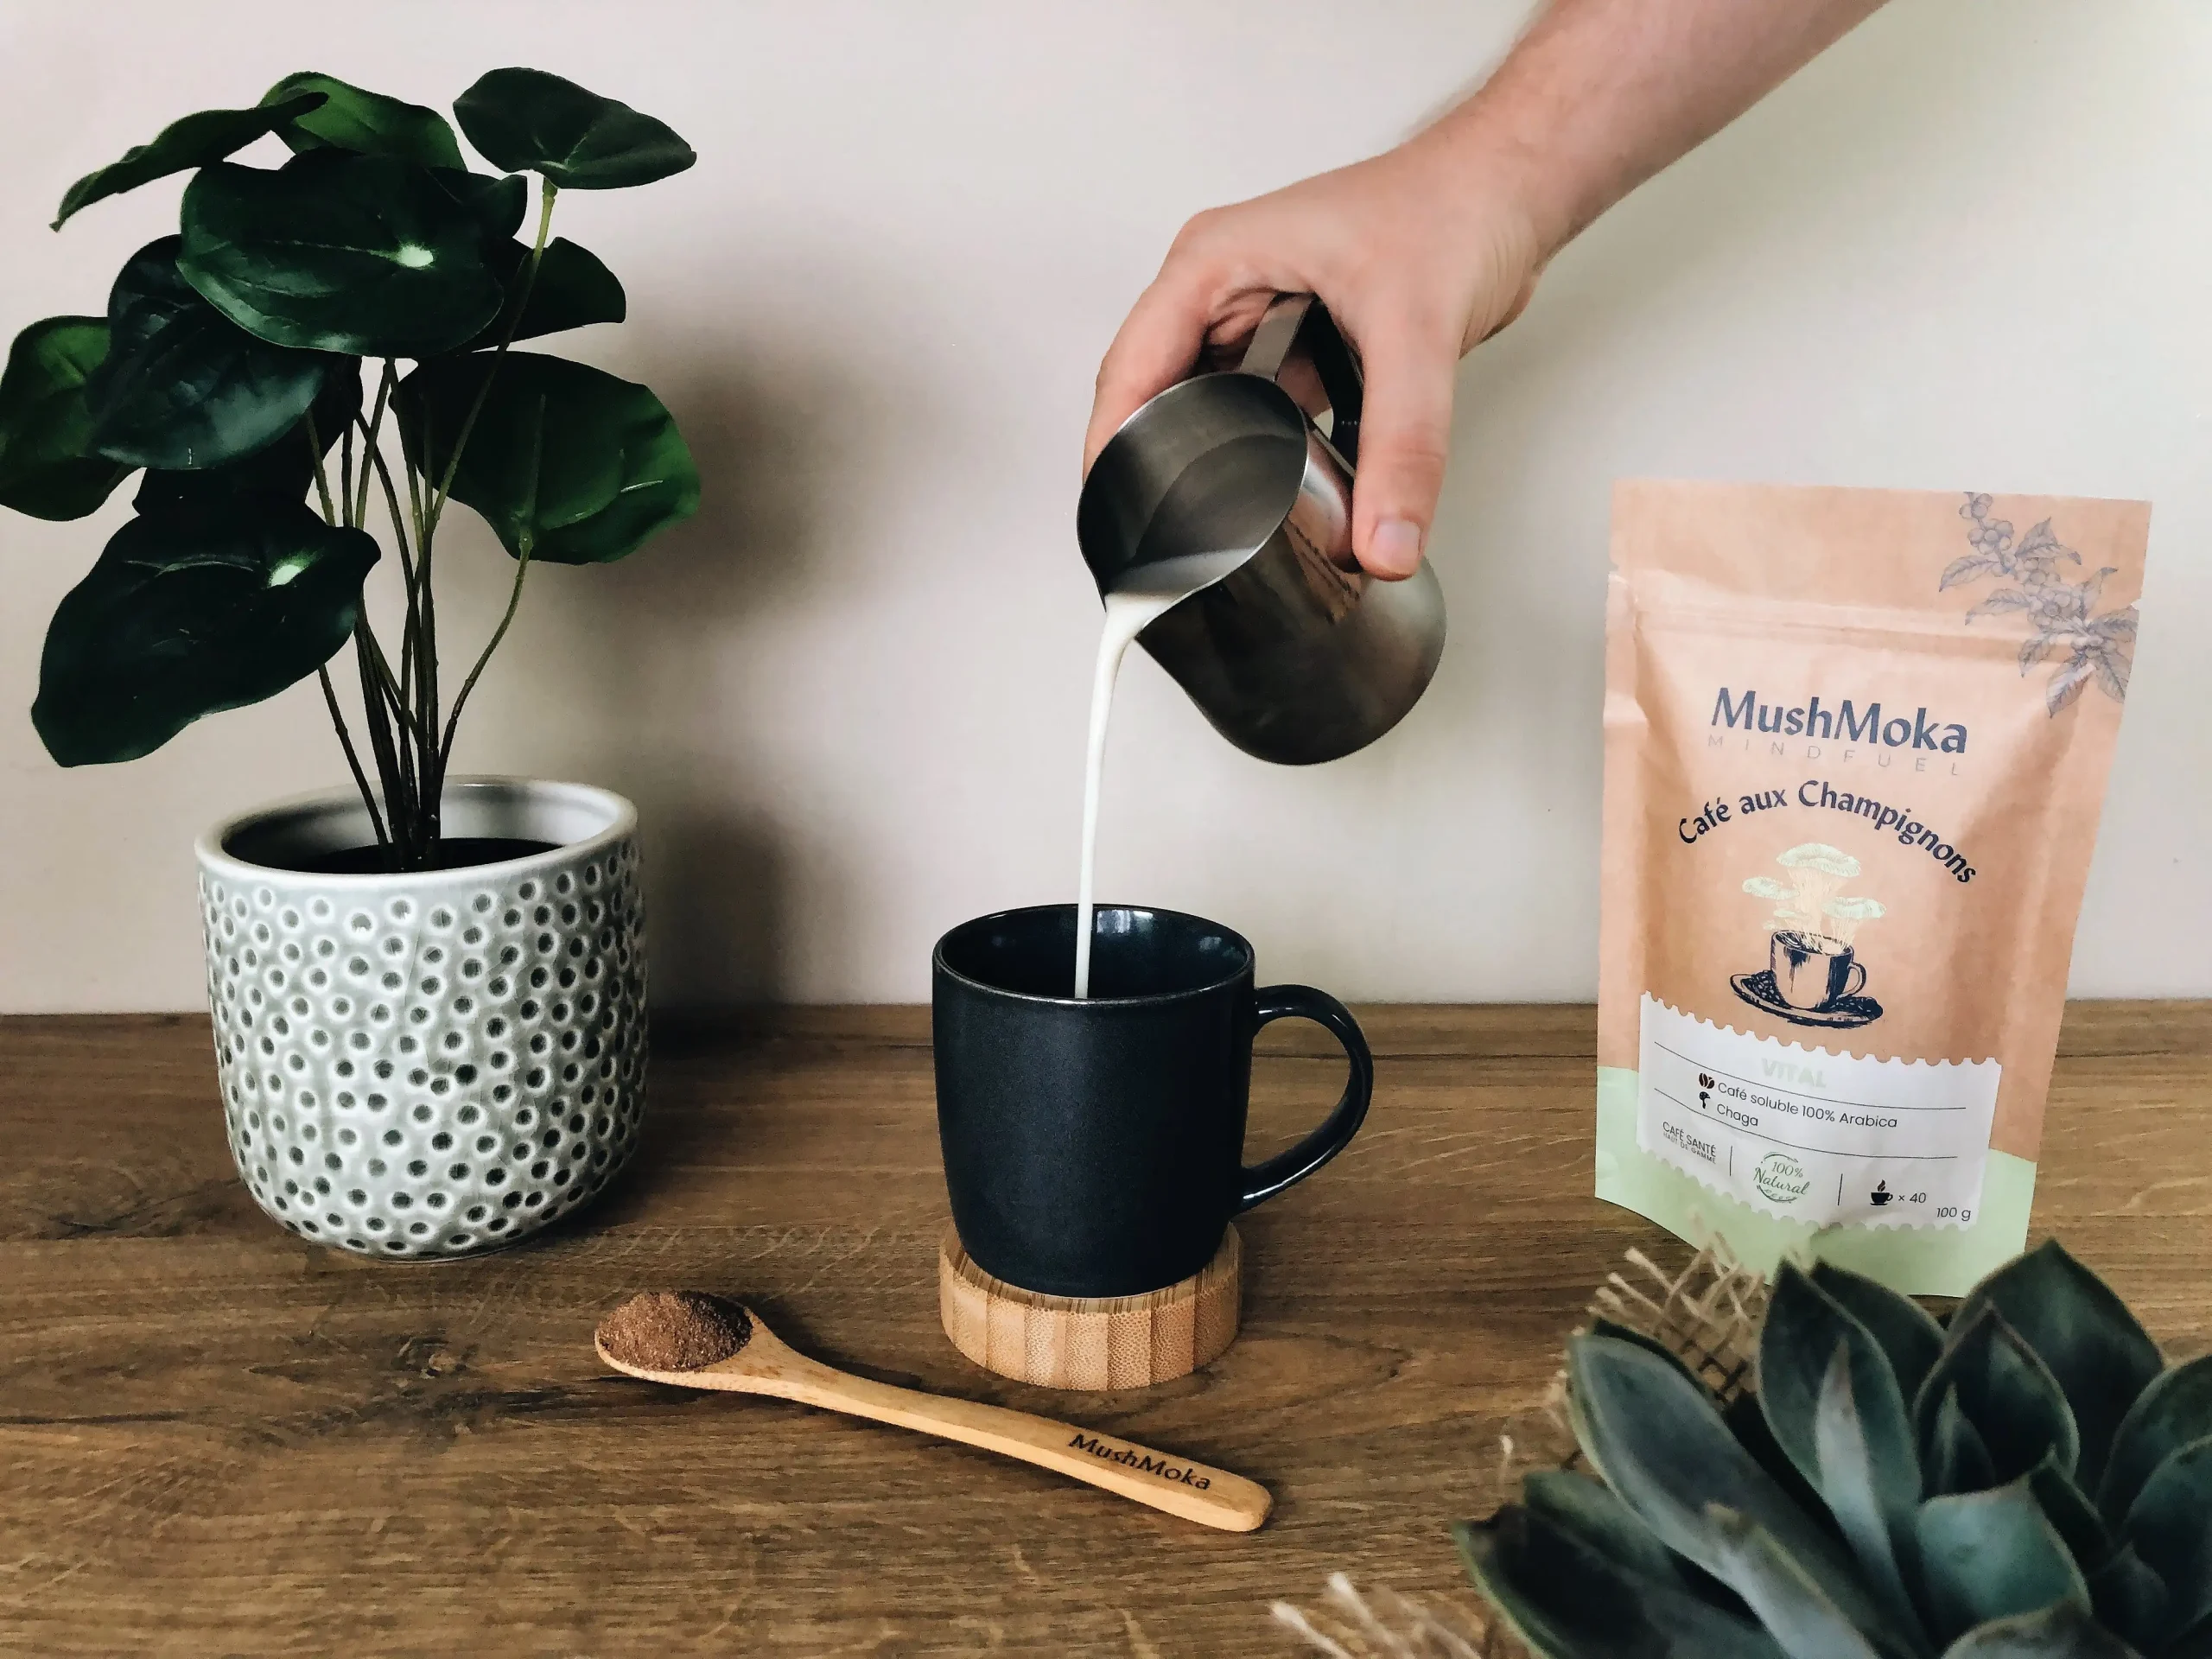 MushMoka - Avantages du café aux champignons